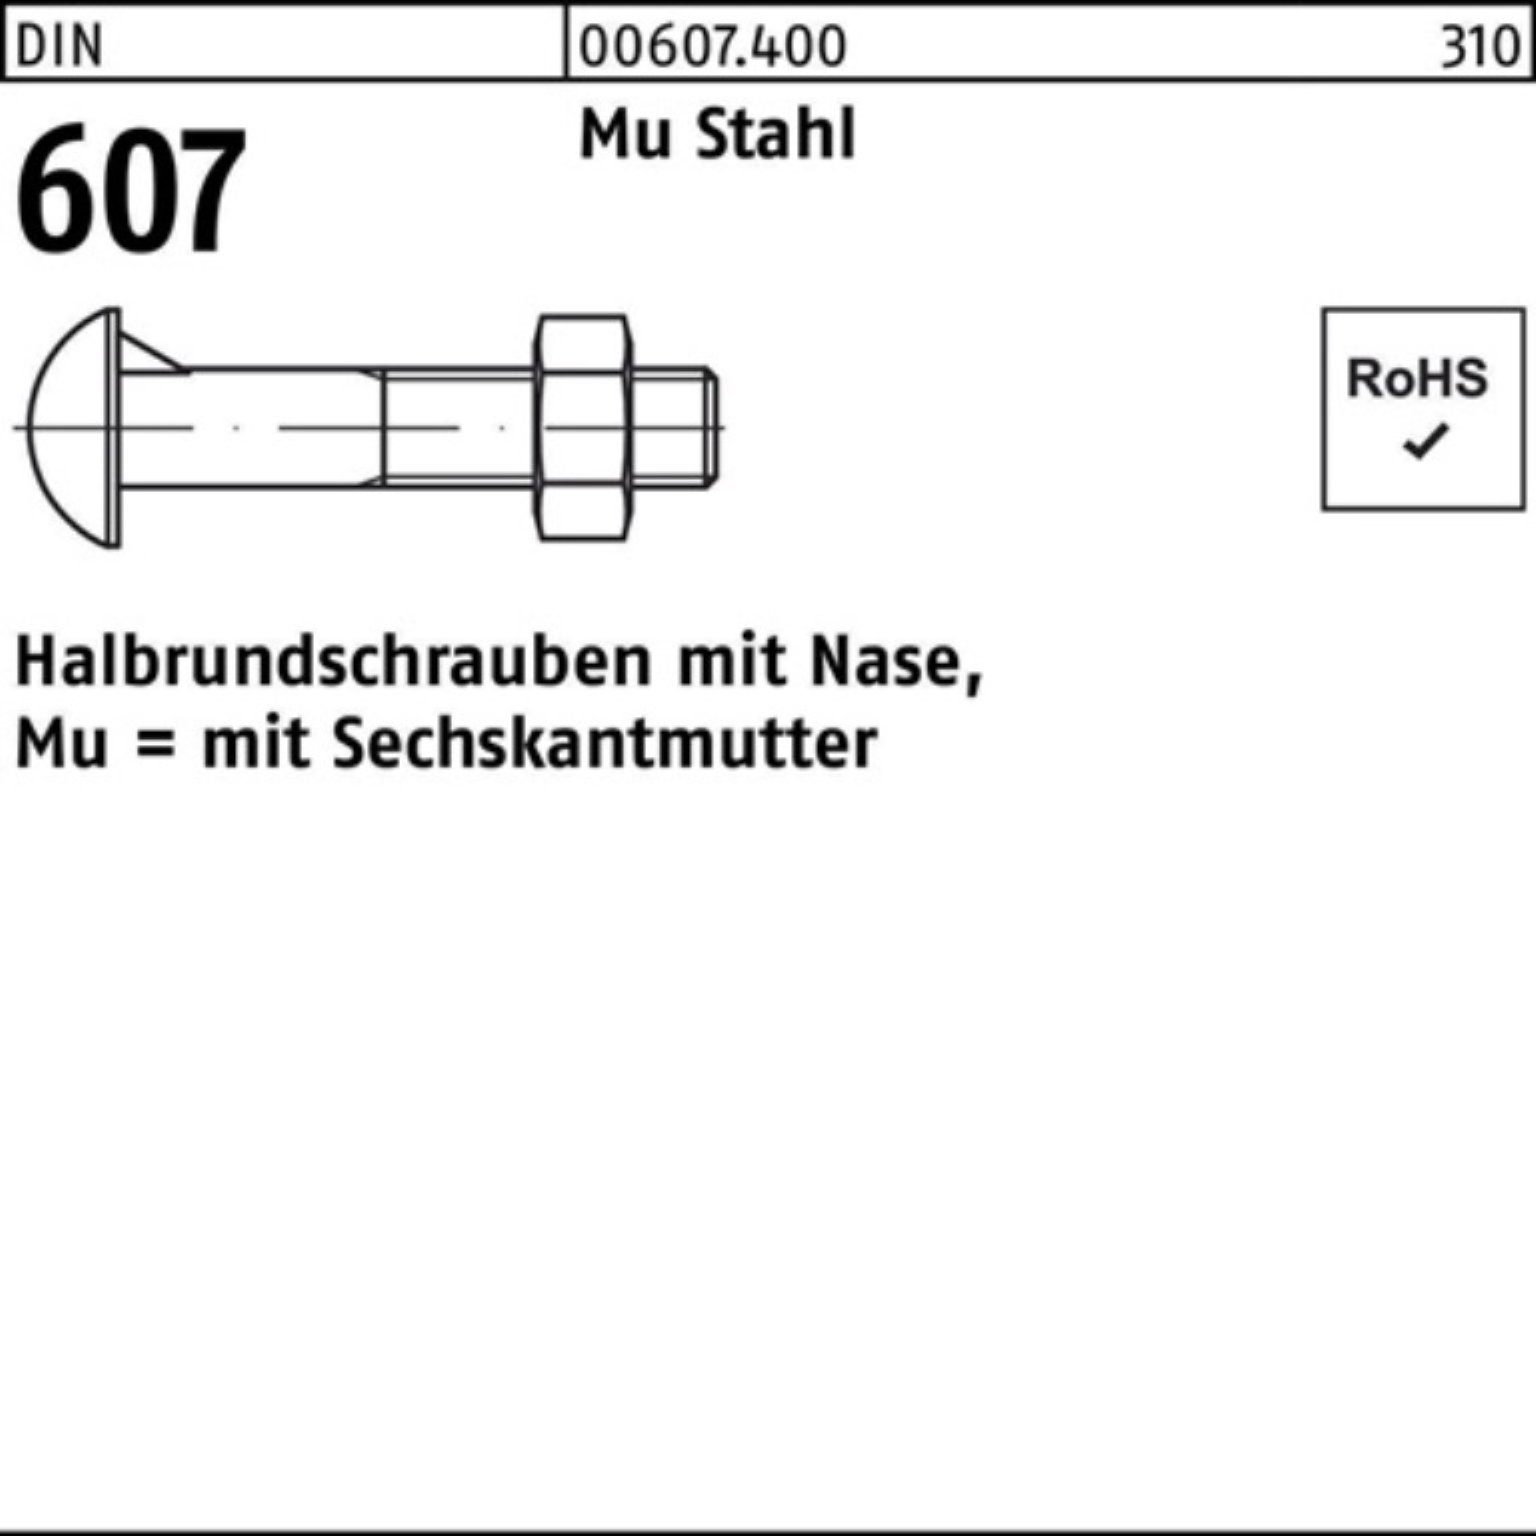 Reyher Schraube 100er Pack Halbrundschraube DIN 607 Nase/6-ktmutter M16x 40 Mu Stahl 4